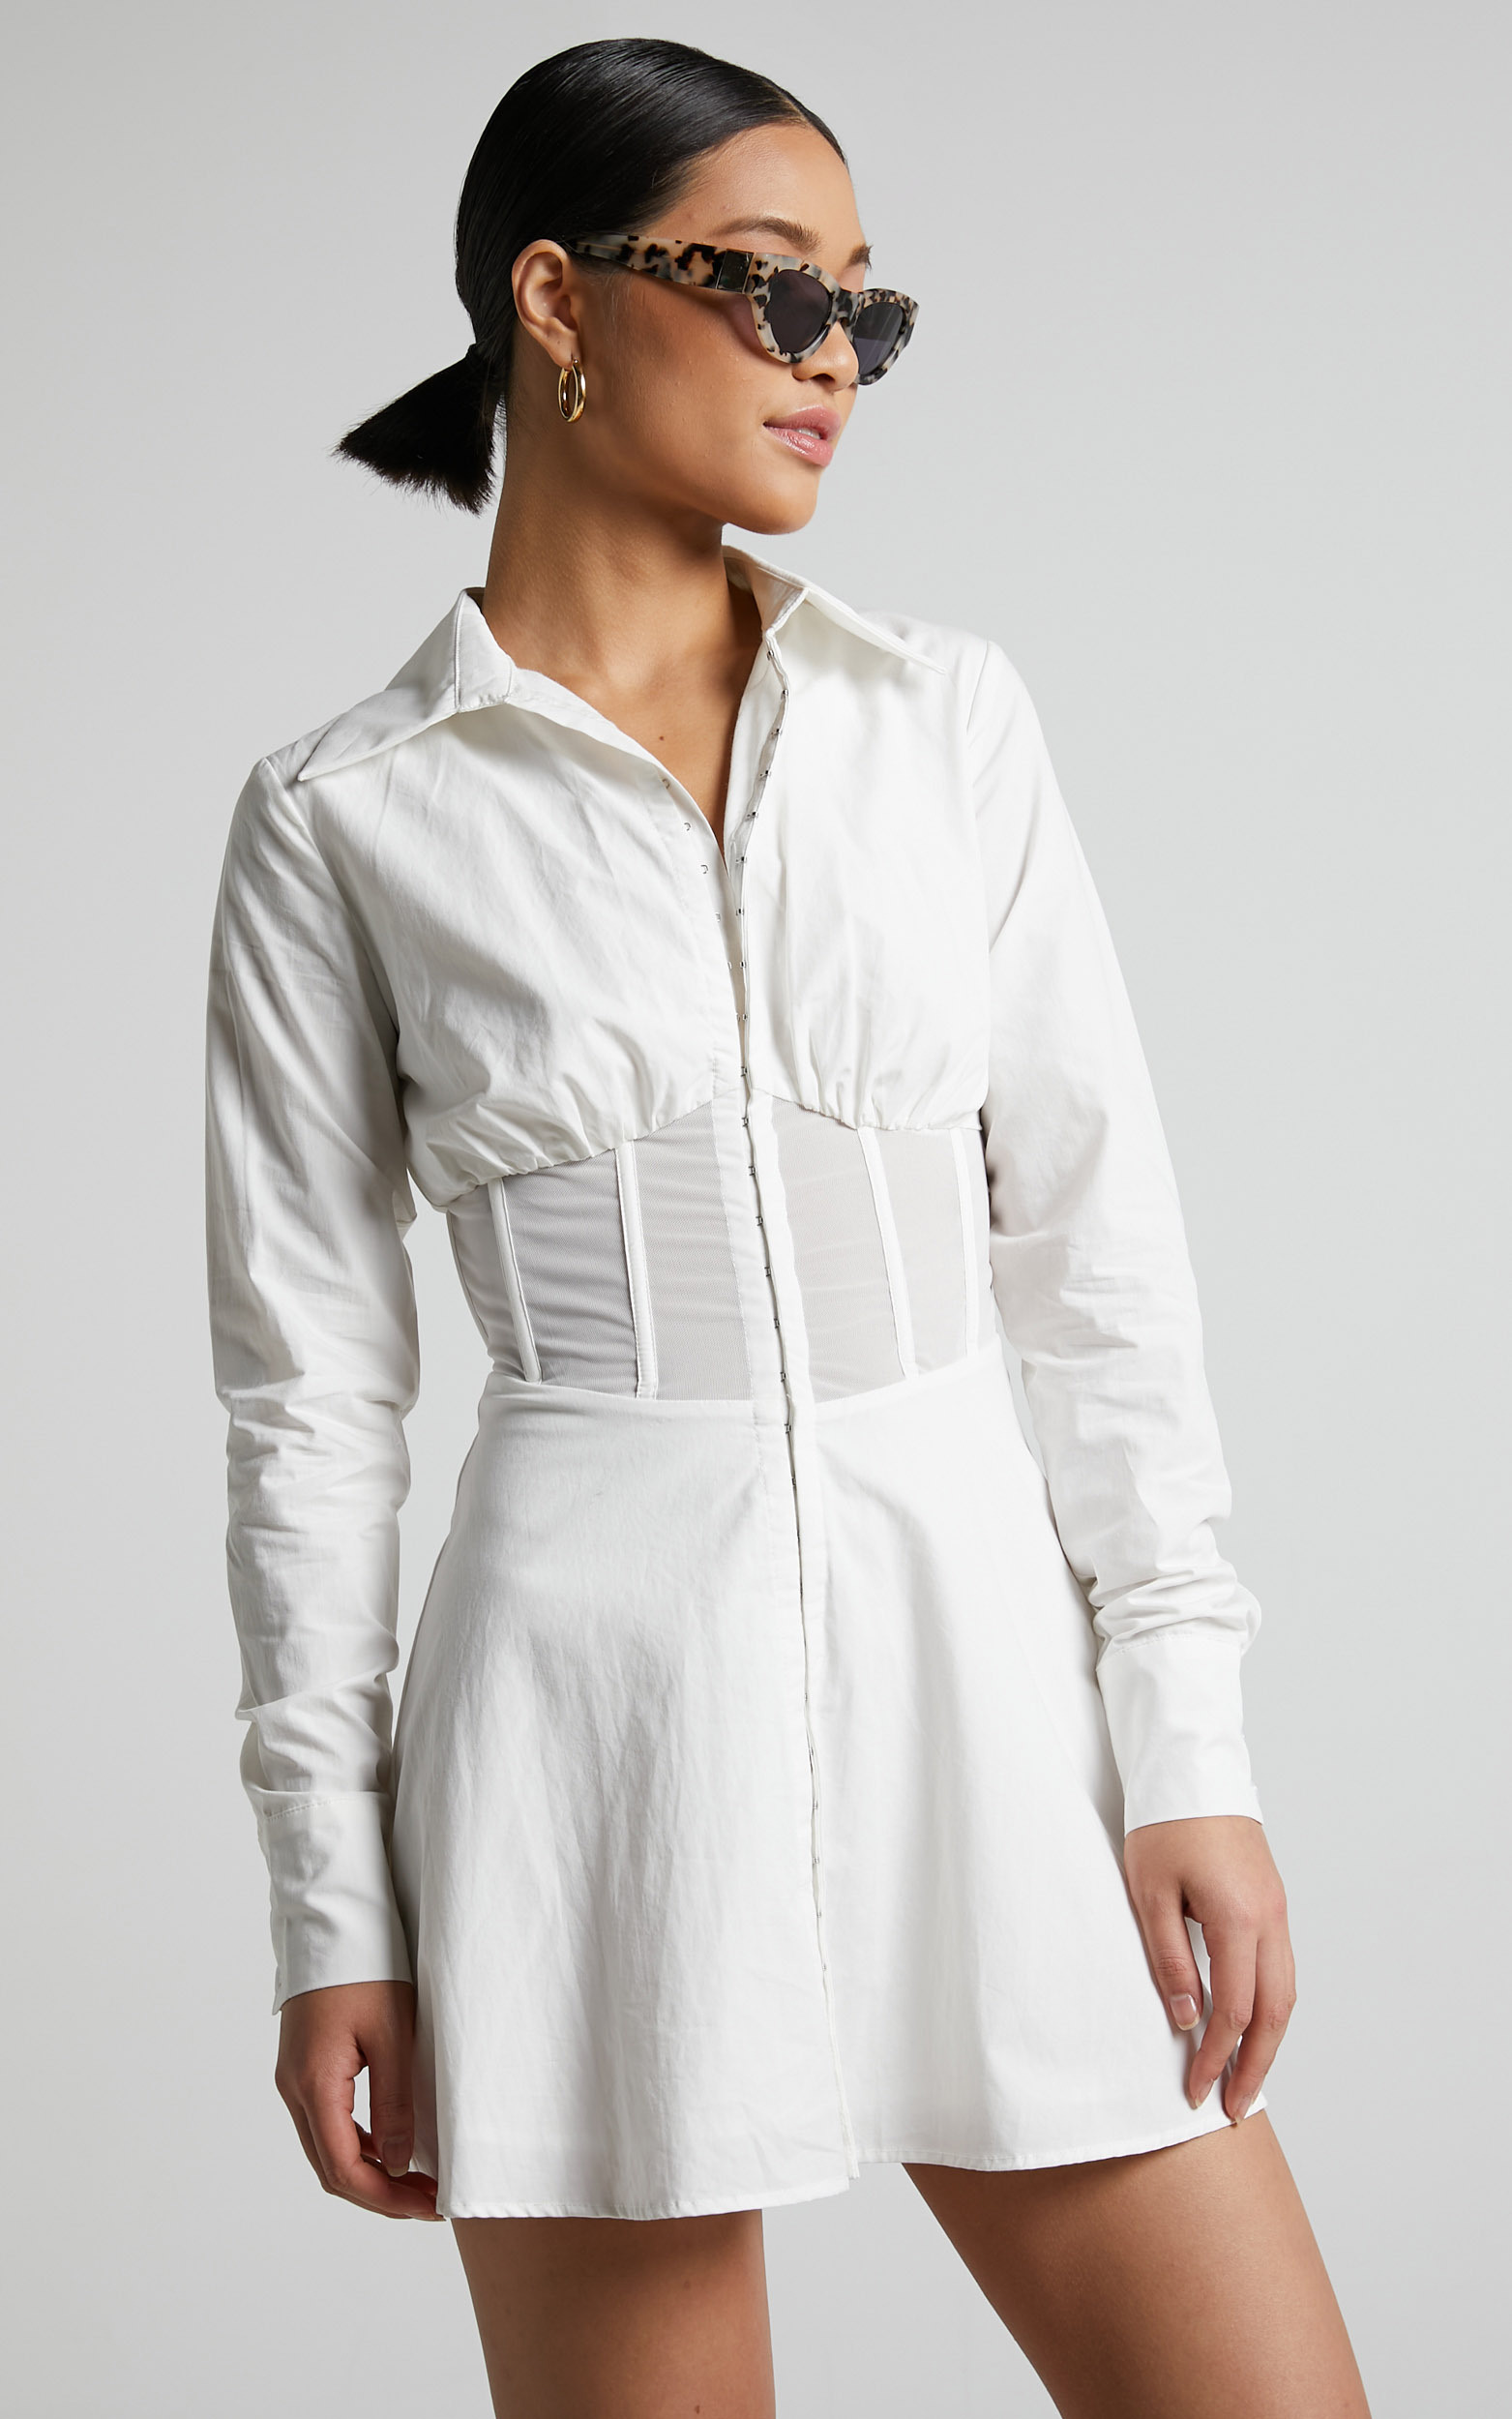 Elenina Mini Dress - Corset Waist Shirt Dress in White | Showpo